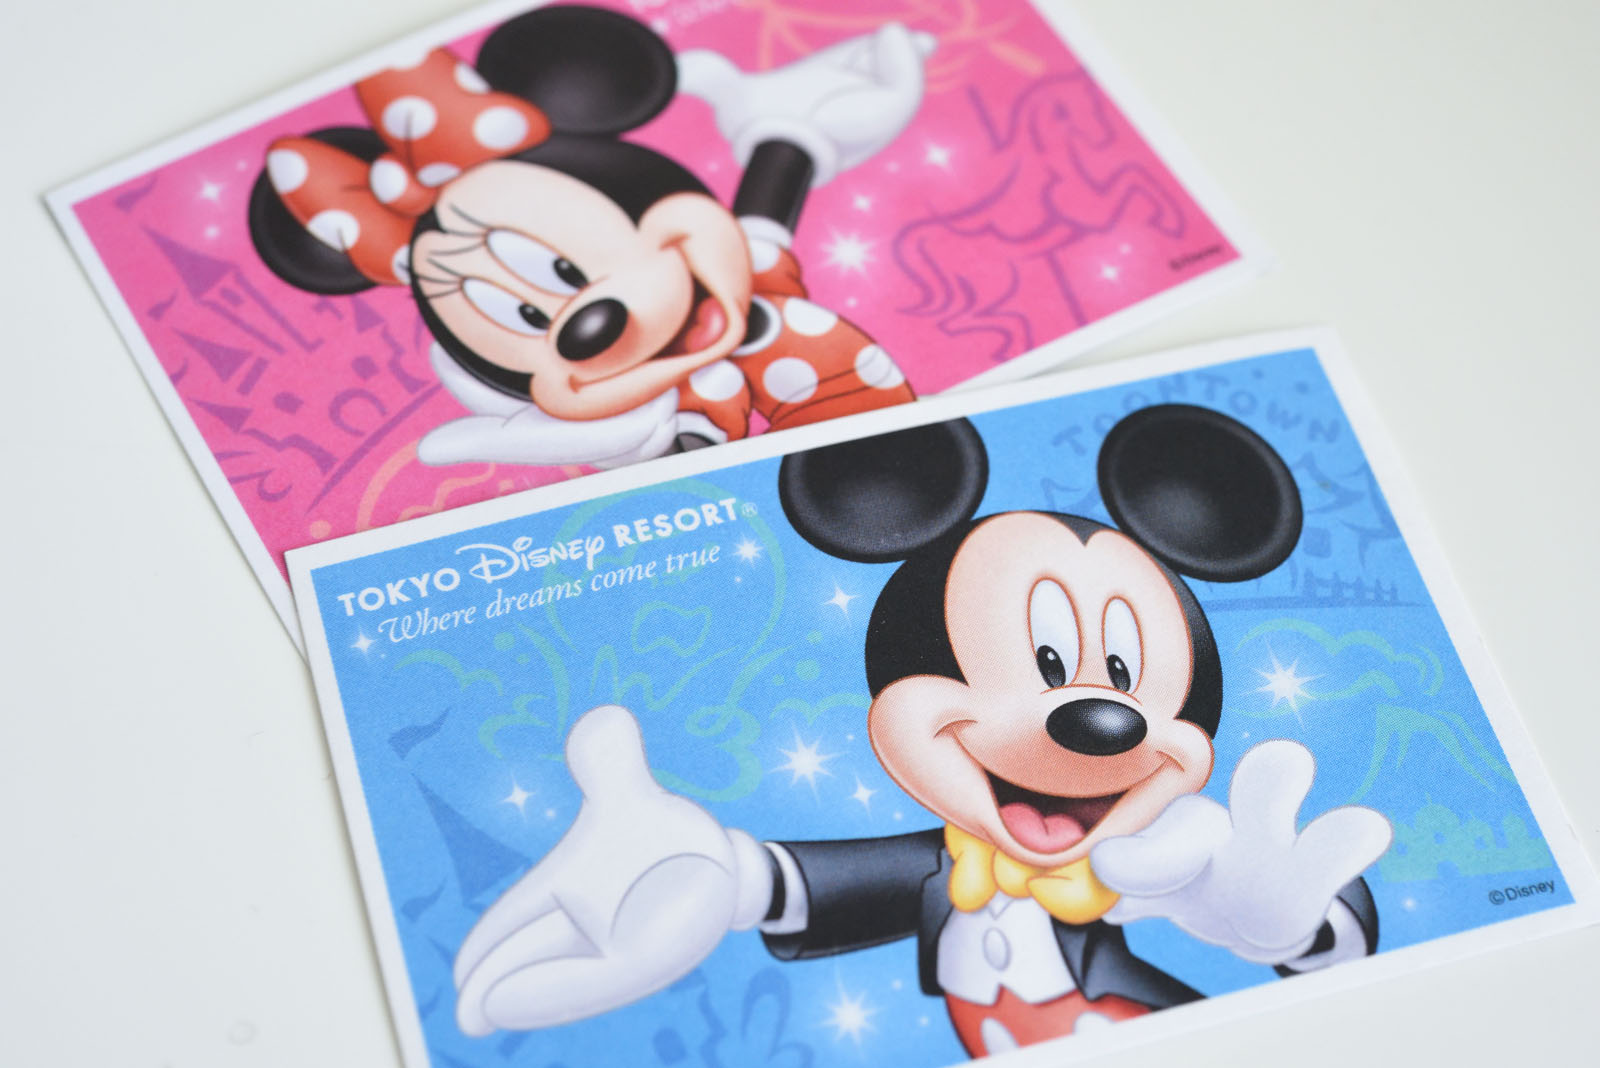 Tdl Tds年間パスポート新デザイン公開 19年3月26日から適用で 7年ぶりにイラストのみのデザインに Disney Colors Blog